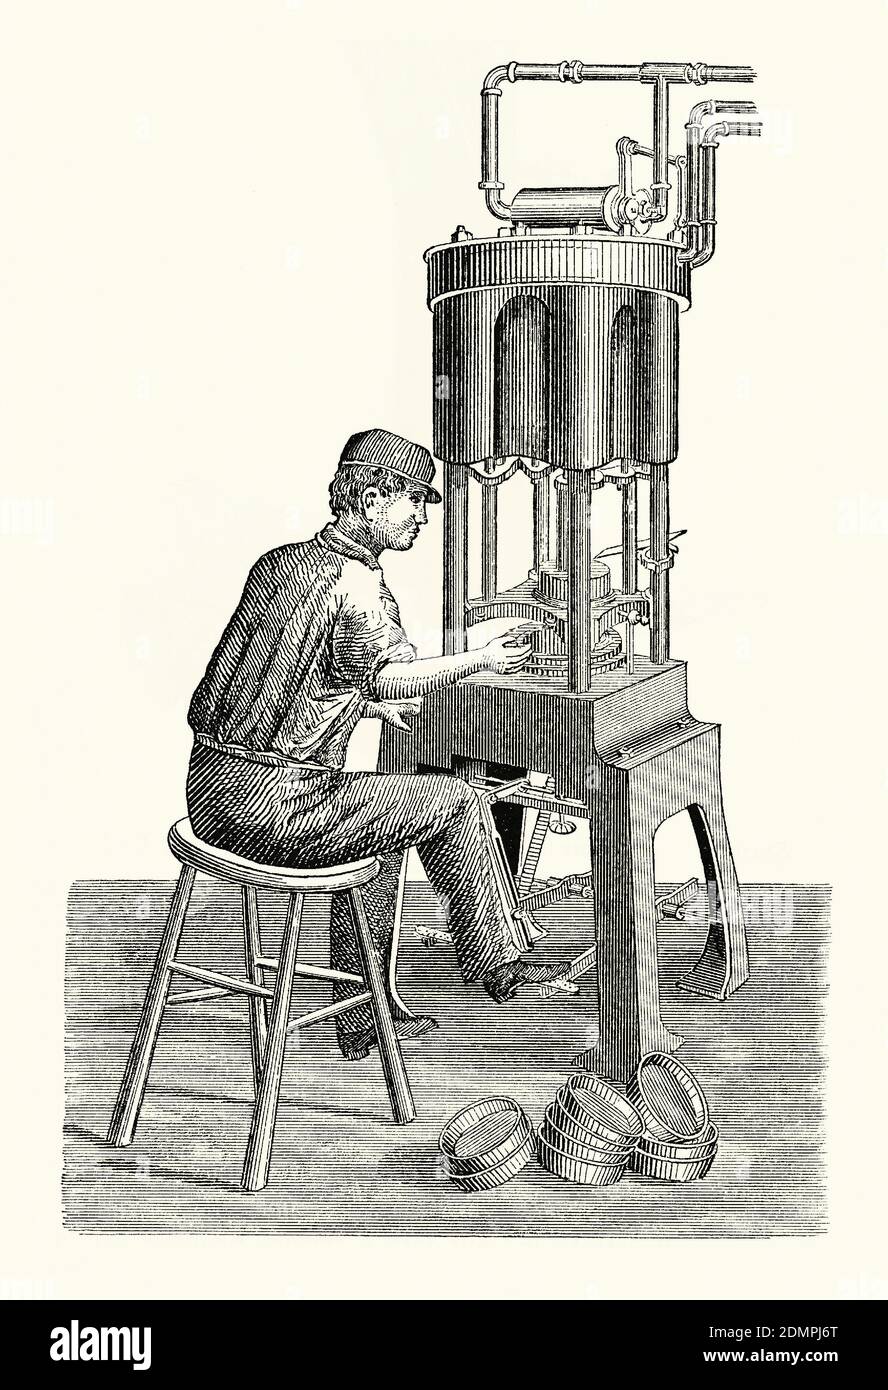 Une ancienne gravure d'un ouvrier utilisant une machine pour façonner la tôle dans les années 1800. Il est issu d'un livre victorien d'ingénierie mécanique des années 1880. L'estampage ou le pressage est le processus de placement de la forme de tôle plate sur une matrice (moule métallique en forme) dans une presse à emboutir. Les pistons actionnés par pied à vapeur sont actionnés en enfonçant la tôle plate dans la matrice formée et dans la forme requise. Voici des exemples de boîtes rondes et finies qui se trouvent sur le sol. Banque D'Images